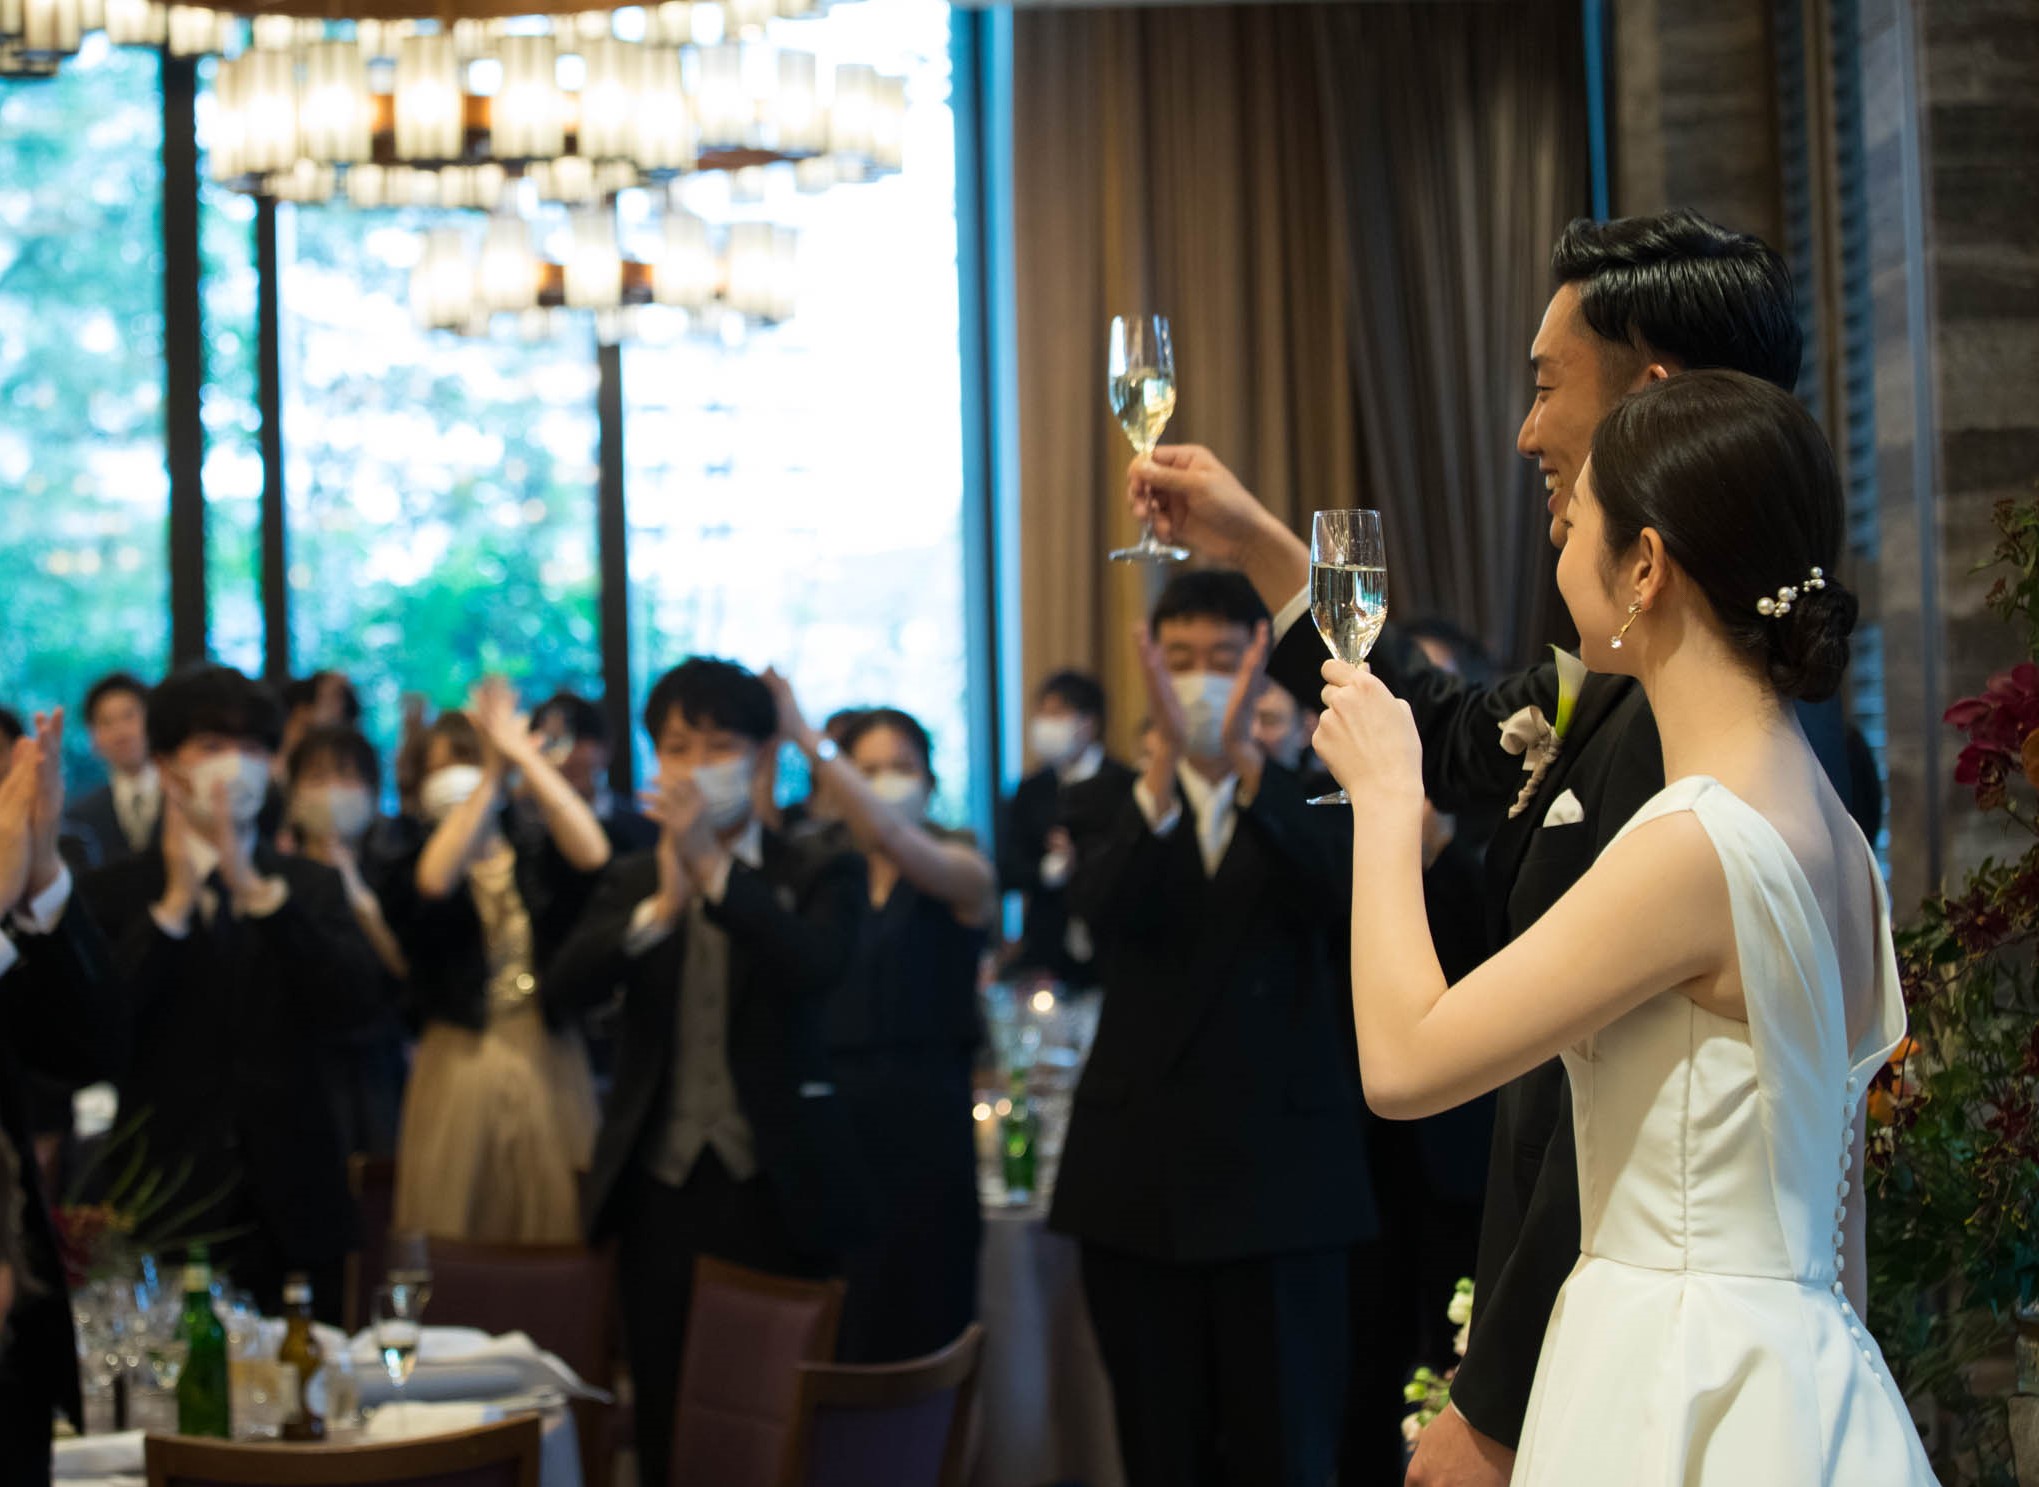 東京で人気のゲストハウス、赤坂プリンスクラシックハウスのご披露宴にて、沢山のゲストと乾杯でお祝いをする新郎新婦のお二人